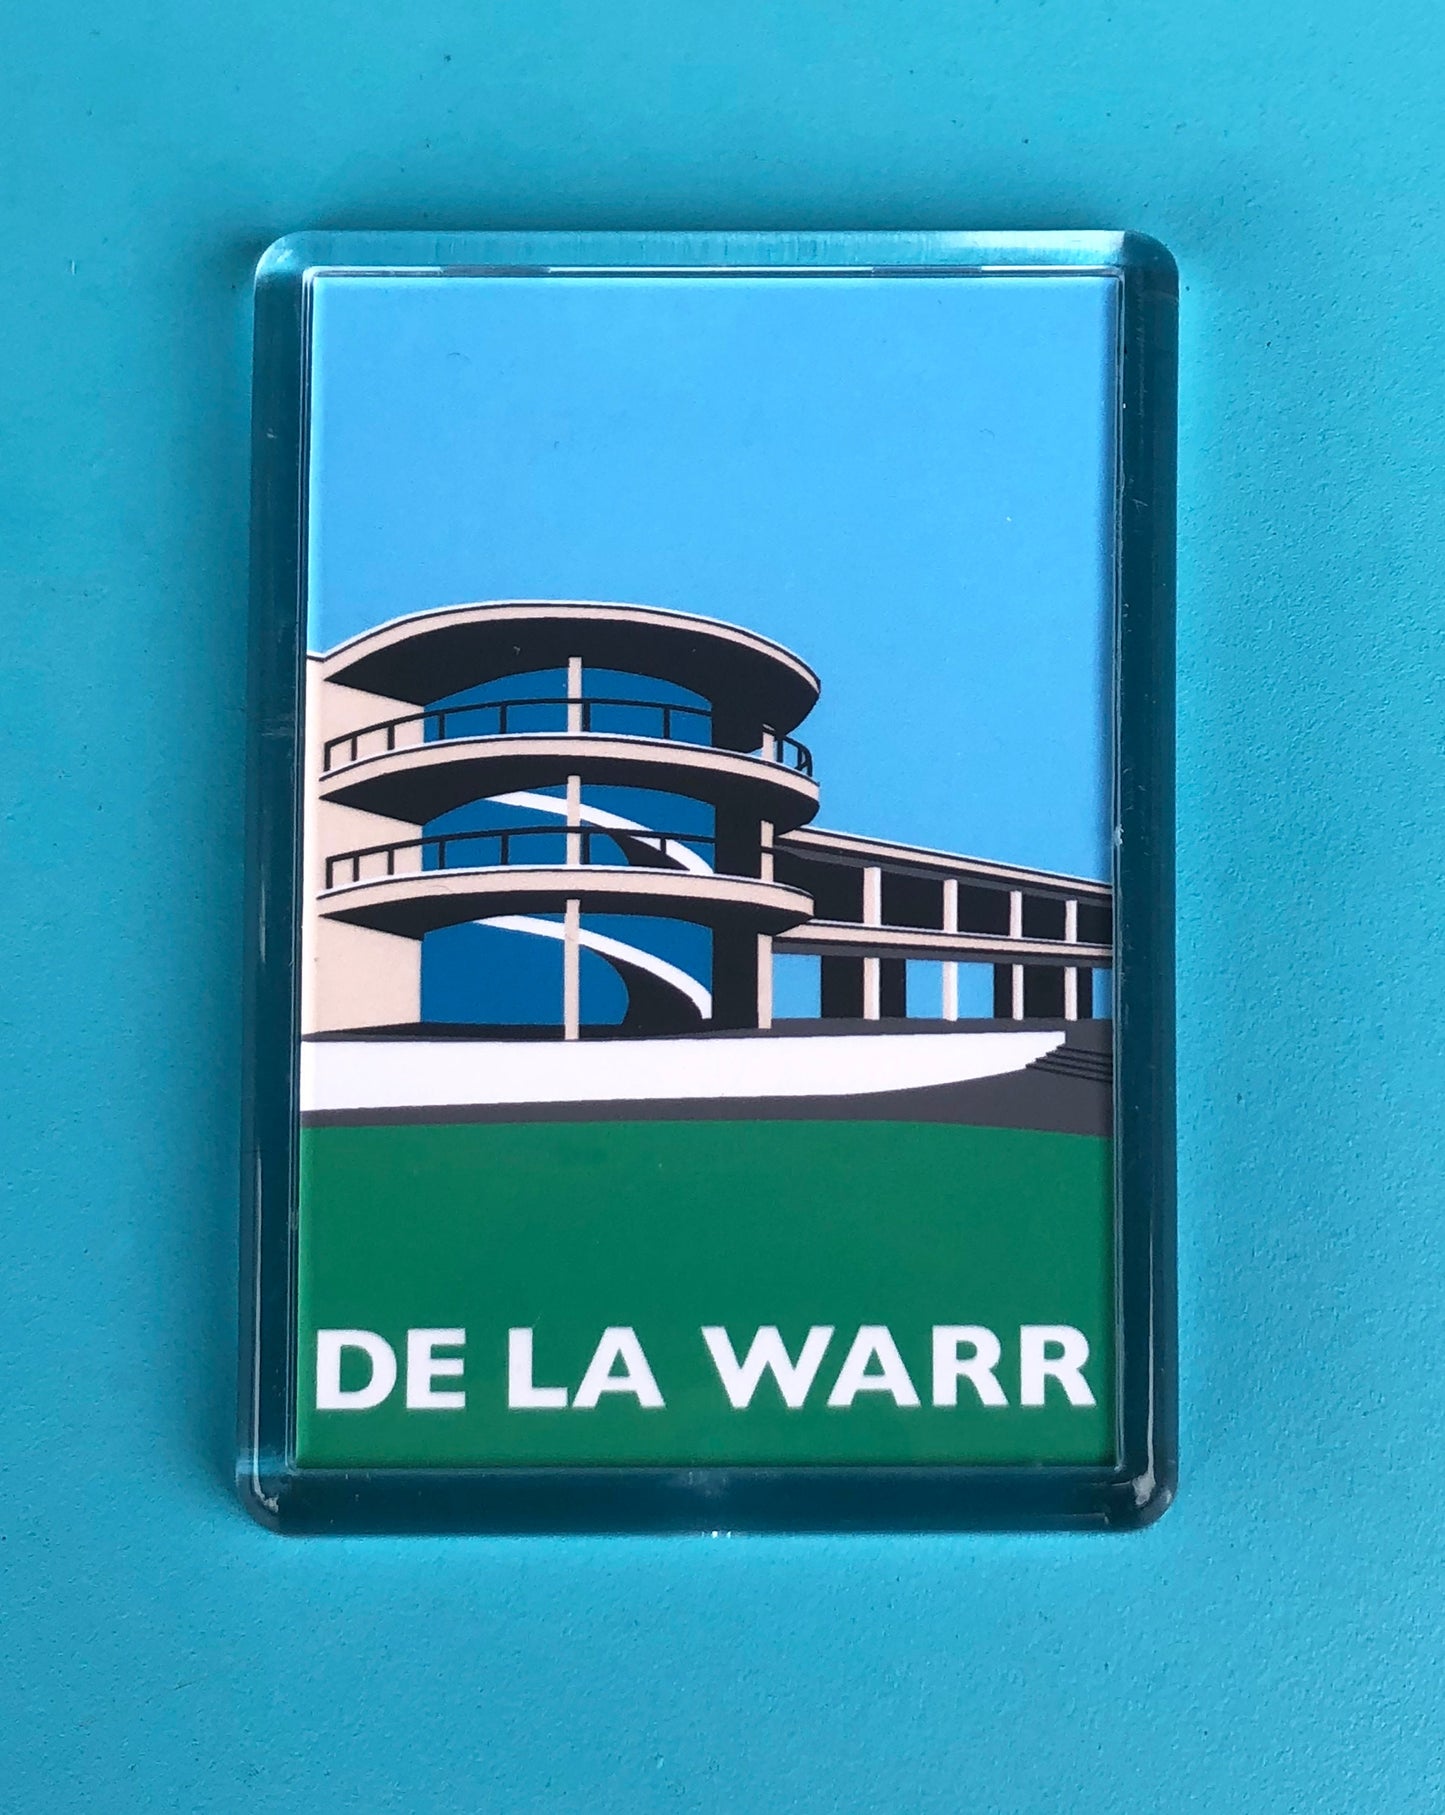 DE LA WARR Pavilion Travel Poster Style Fridge Magnet by Rebecca Pymar